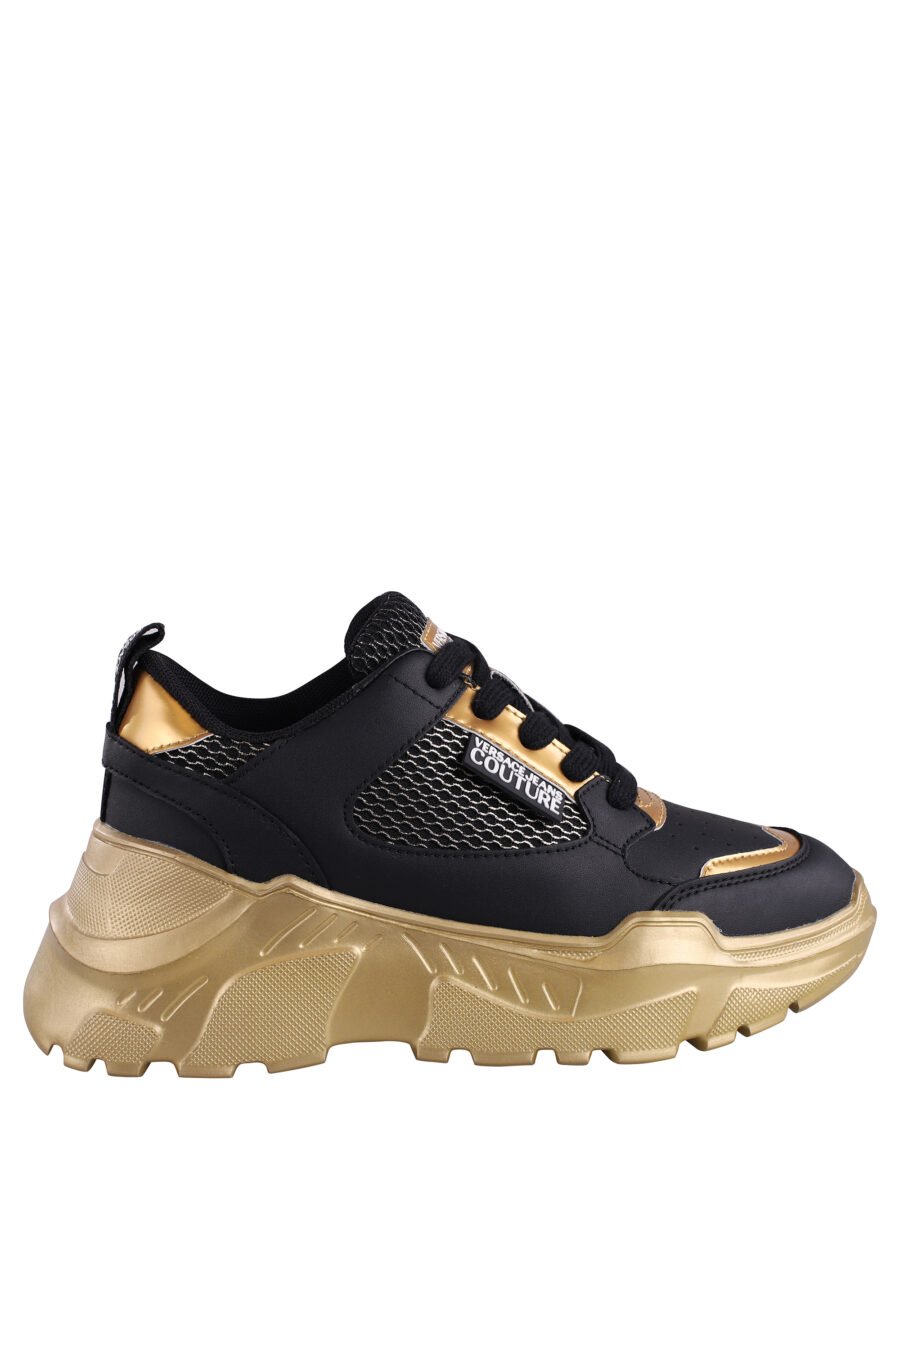 Zapatillas negras con dorado y plataforma - IMG 9082